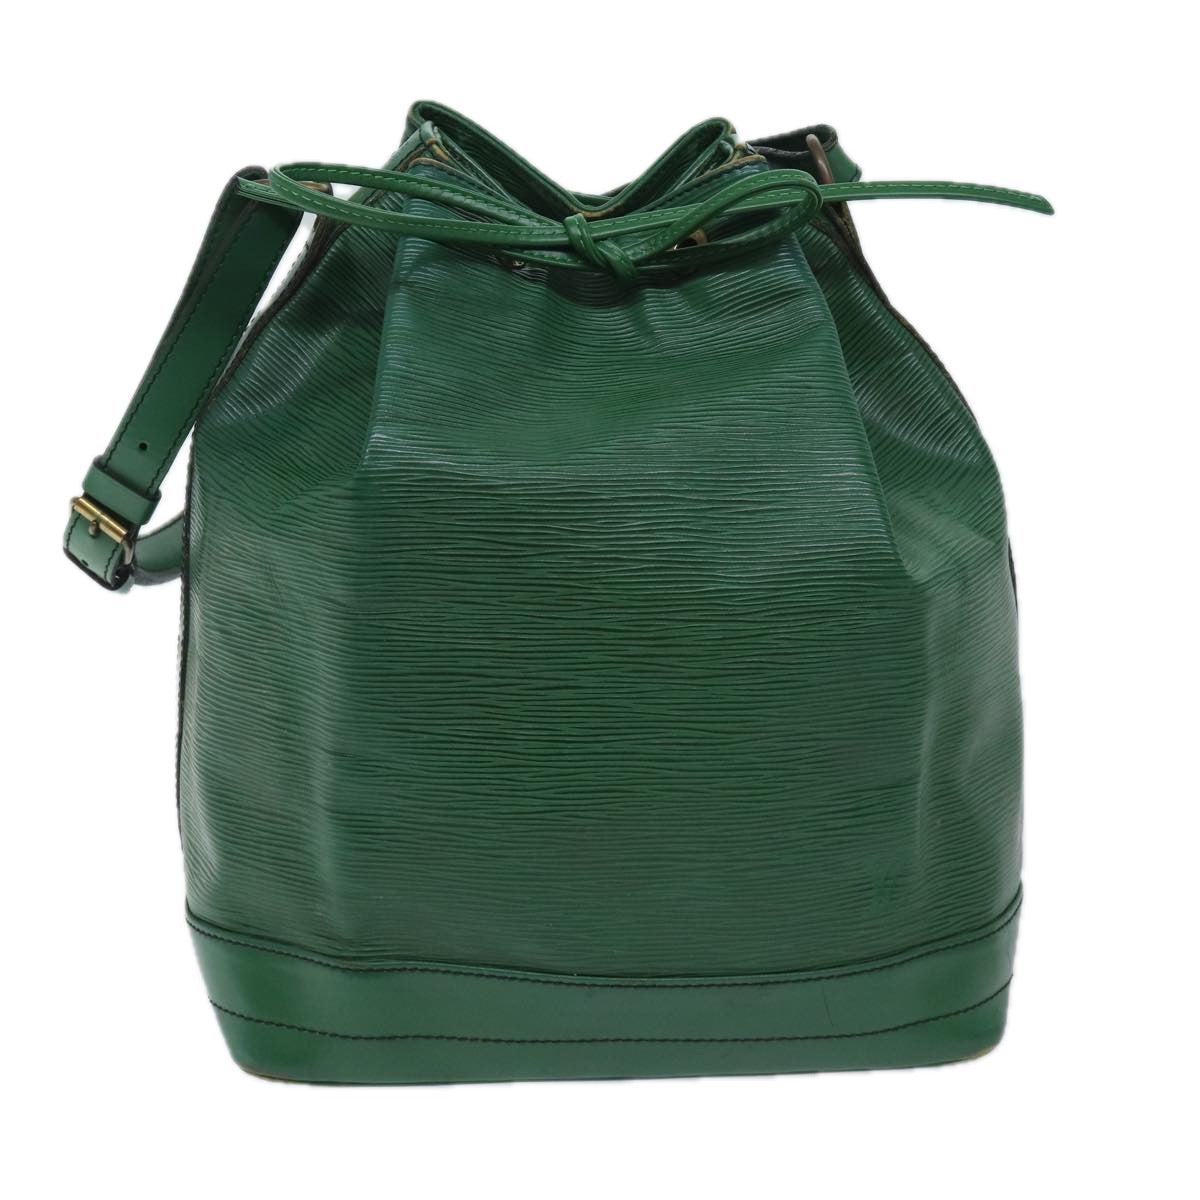 LOUIS VUITTON Epi Noe Shoulder Bag Green M44004 LV Auth 69464